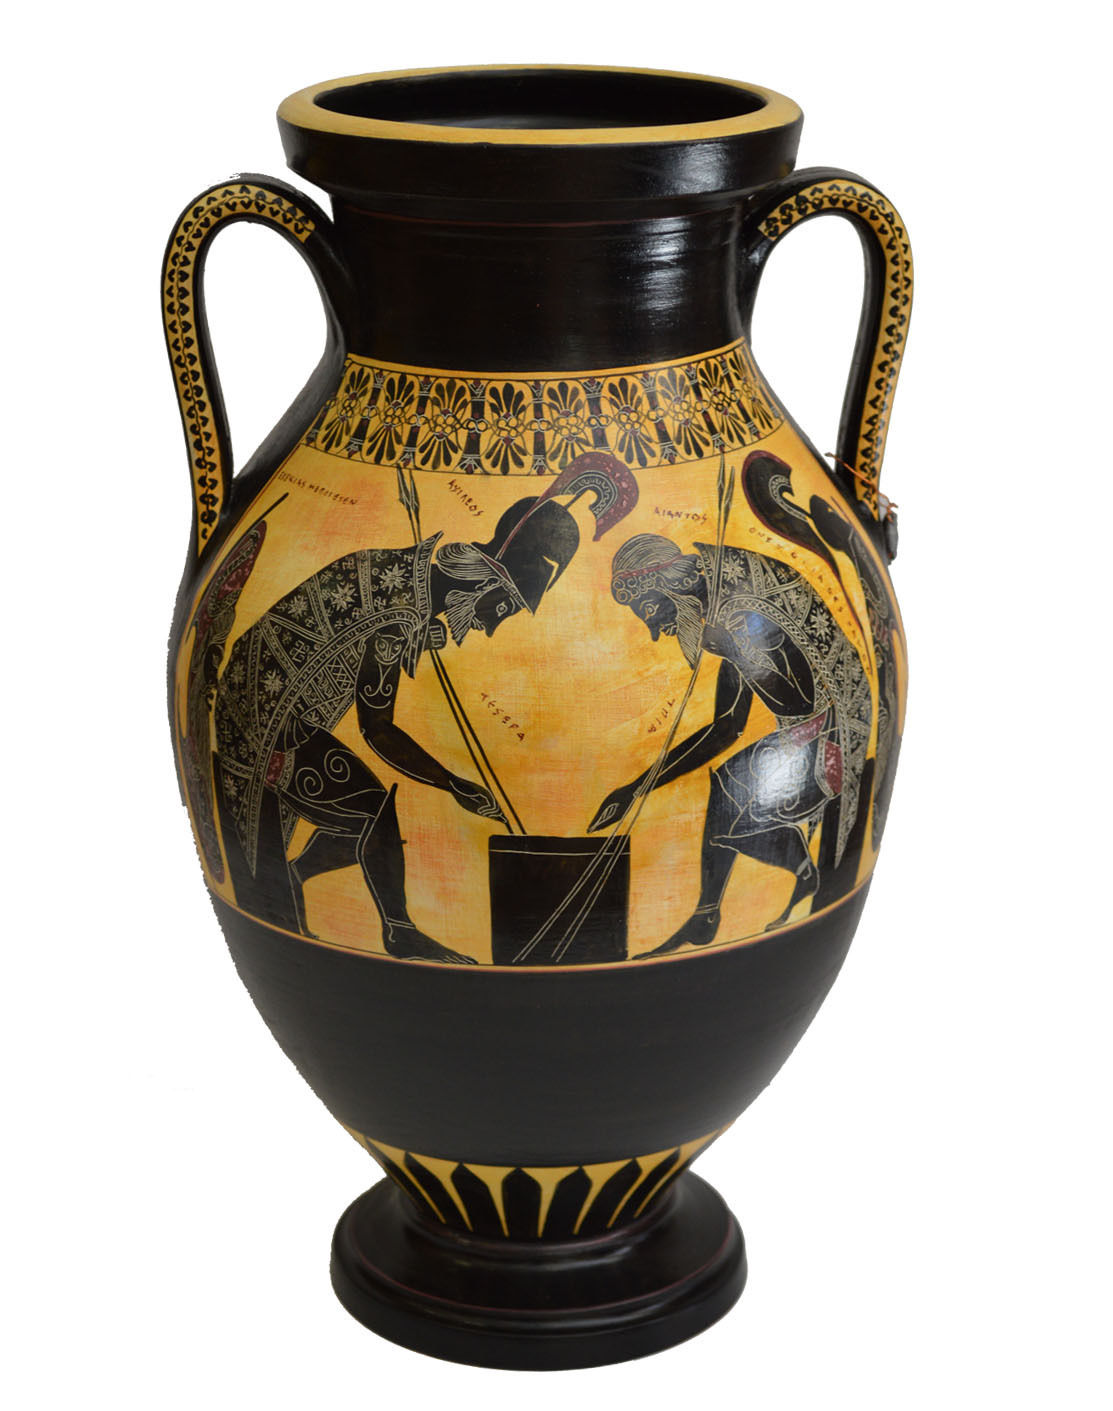 Les vases grecs : 5 modèles exceptionnels parmi les plus chers vendus sur eBay ! 